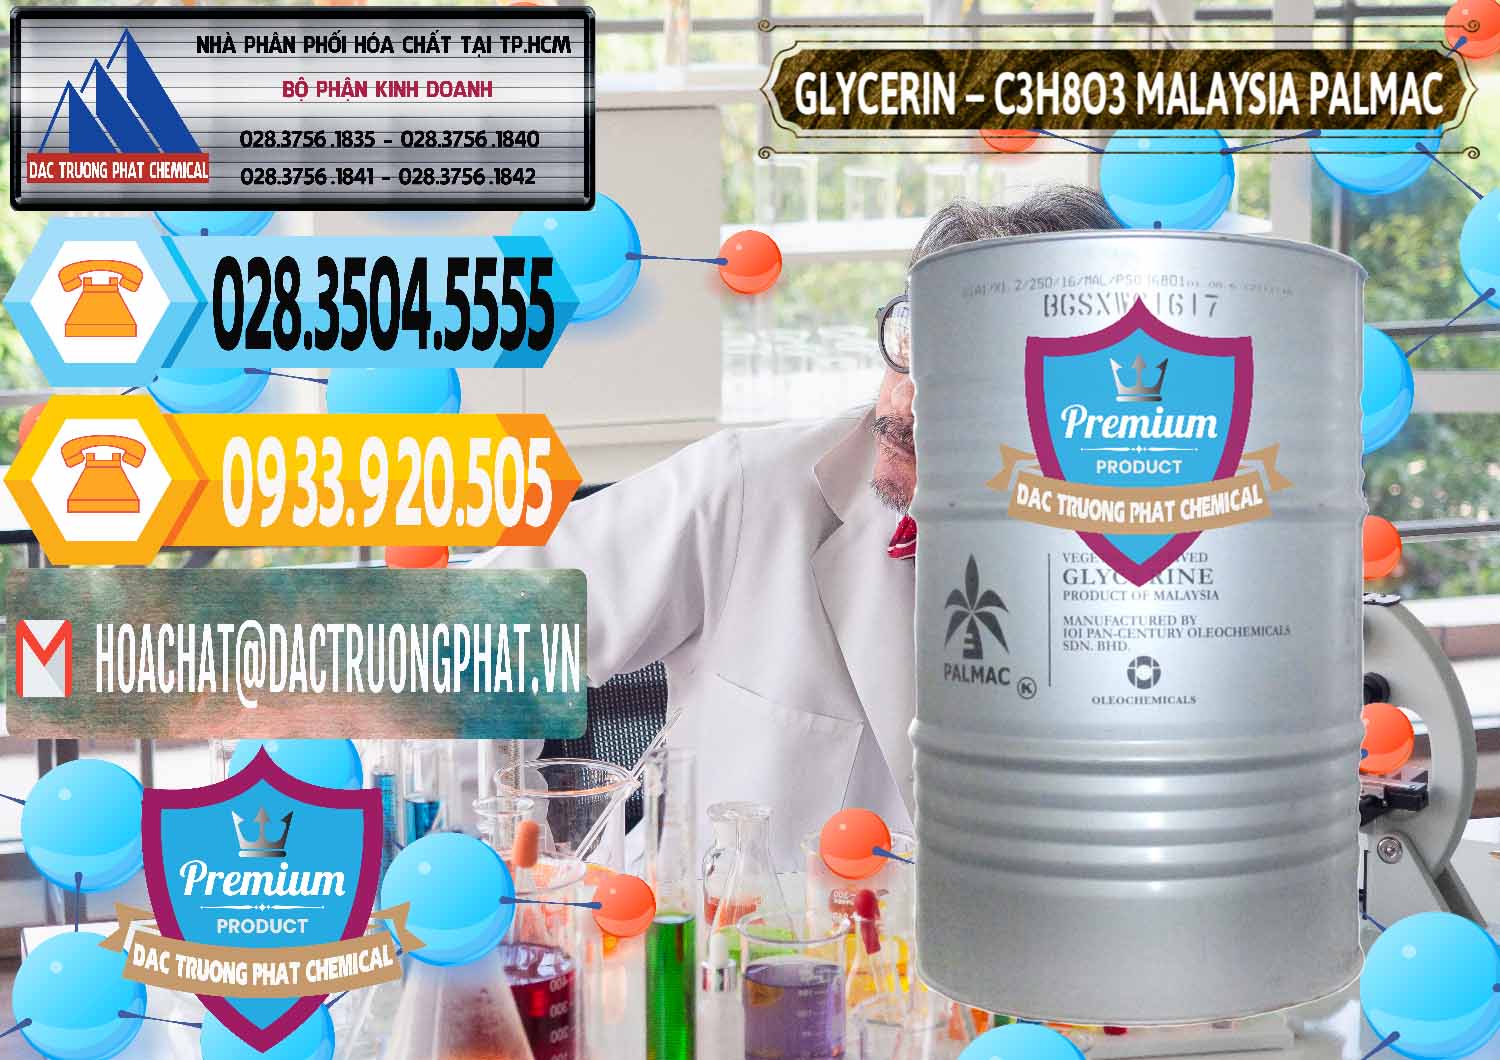 Cty bán - phân phối Glycerin – C3H8O3 99.7% Malaysia Palmac - 0067 - Cty nhập khẩu & cung cấp hóa chất tại TP.HCM - hoachattayrua.net